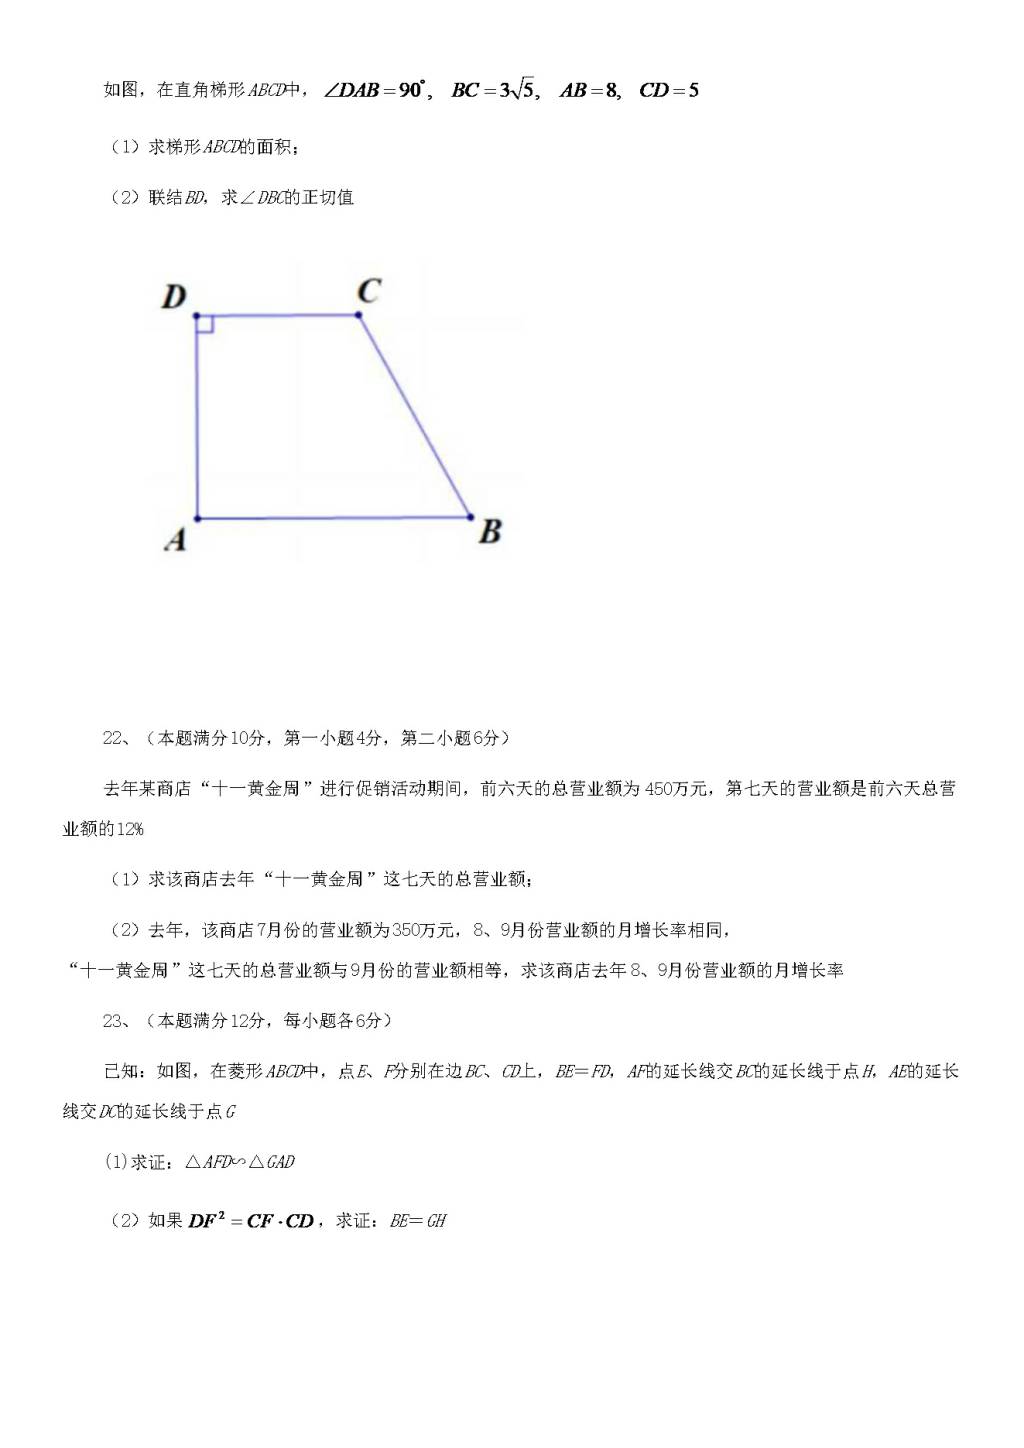 2020年上海中考数学试题及答案（文件编号：21032205）